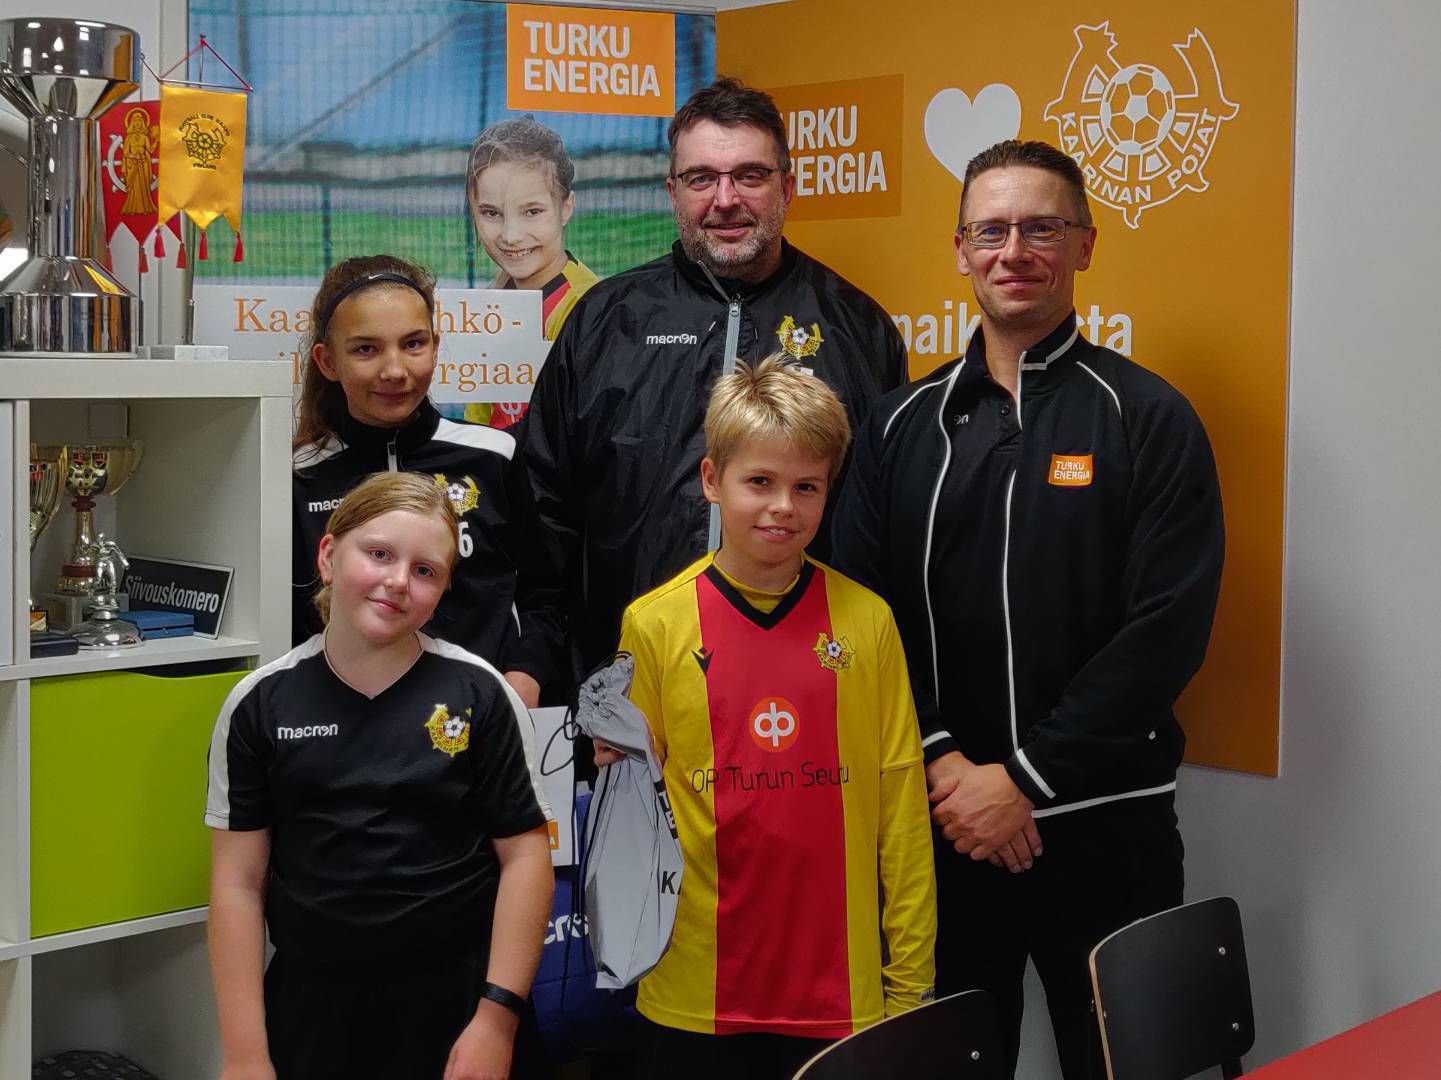 KaaPon ja Turku Energian Pyörällä treeneihin -haaste oli menestys! 